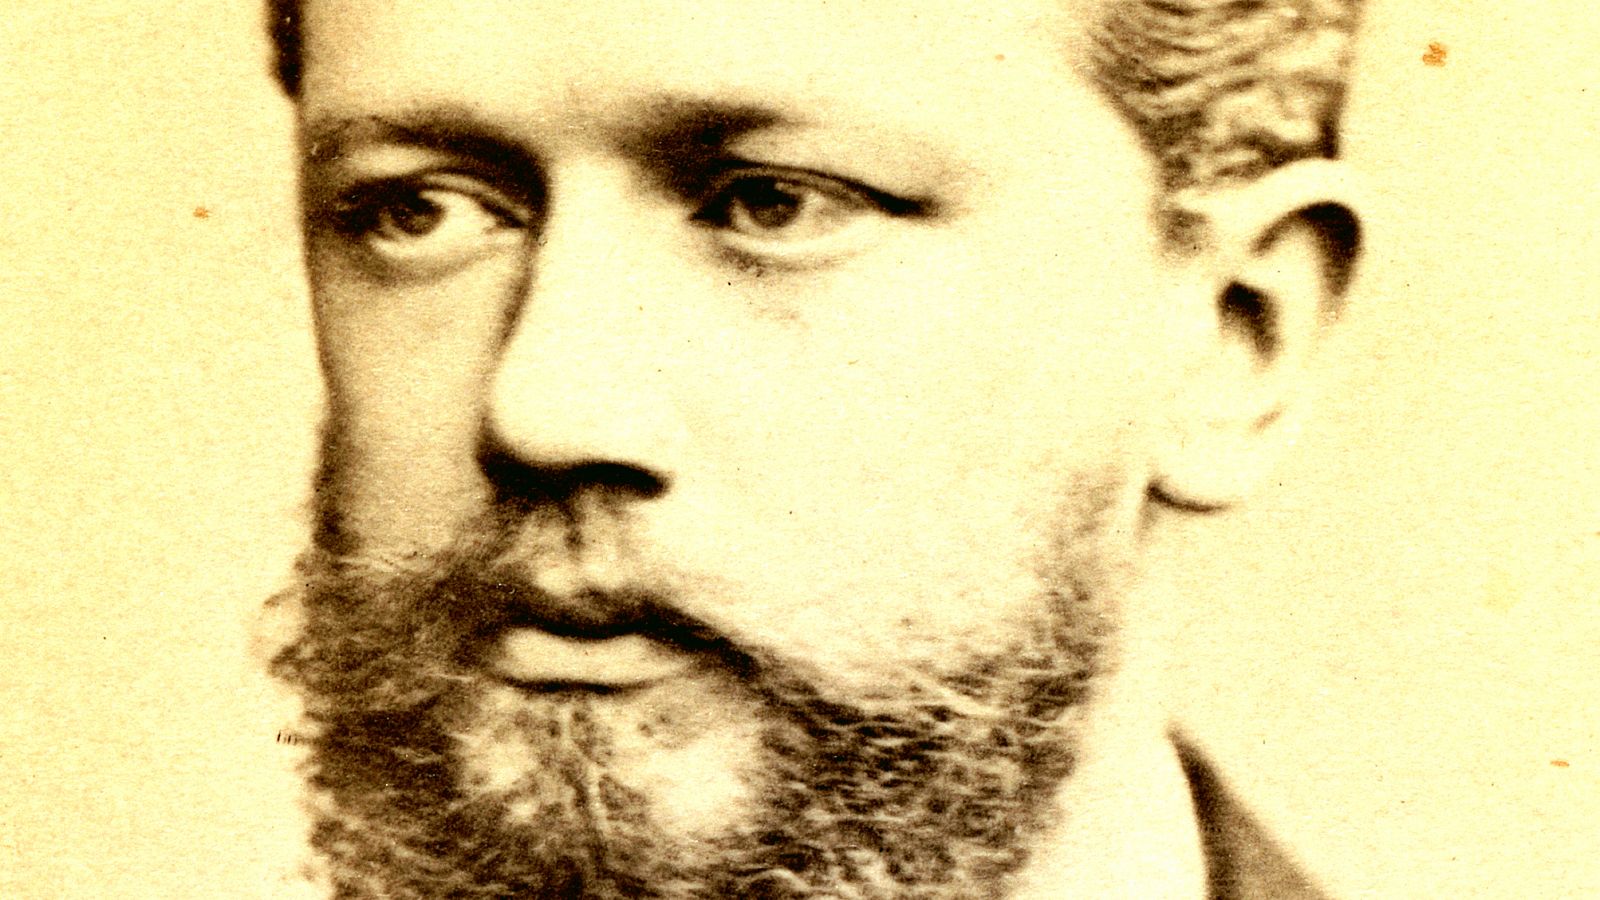 Redescubre la música de Tchaikovsky, uno de los grandes compositores de la historia